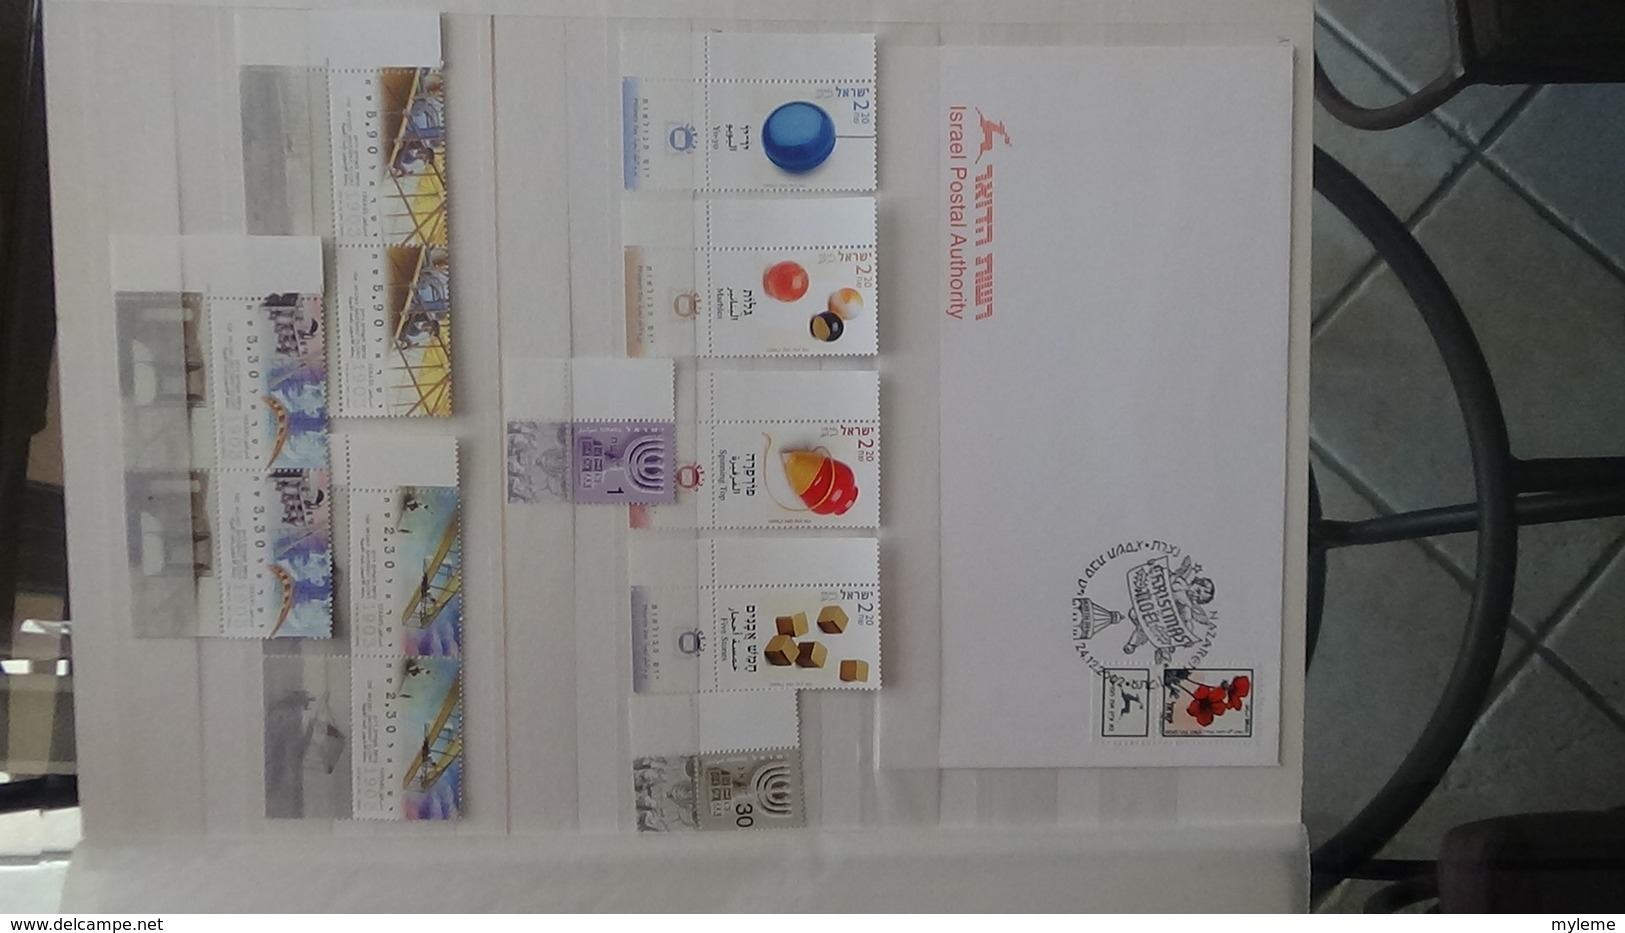 Grosse collection de timbres + blocs + carnets d'Israël tous avec tabs et **. Côte ++ A saisir !!!